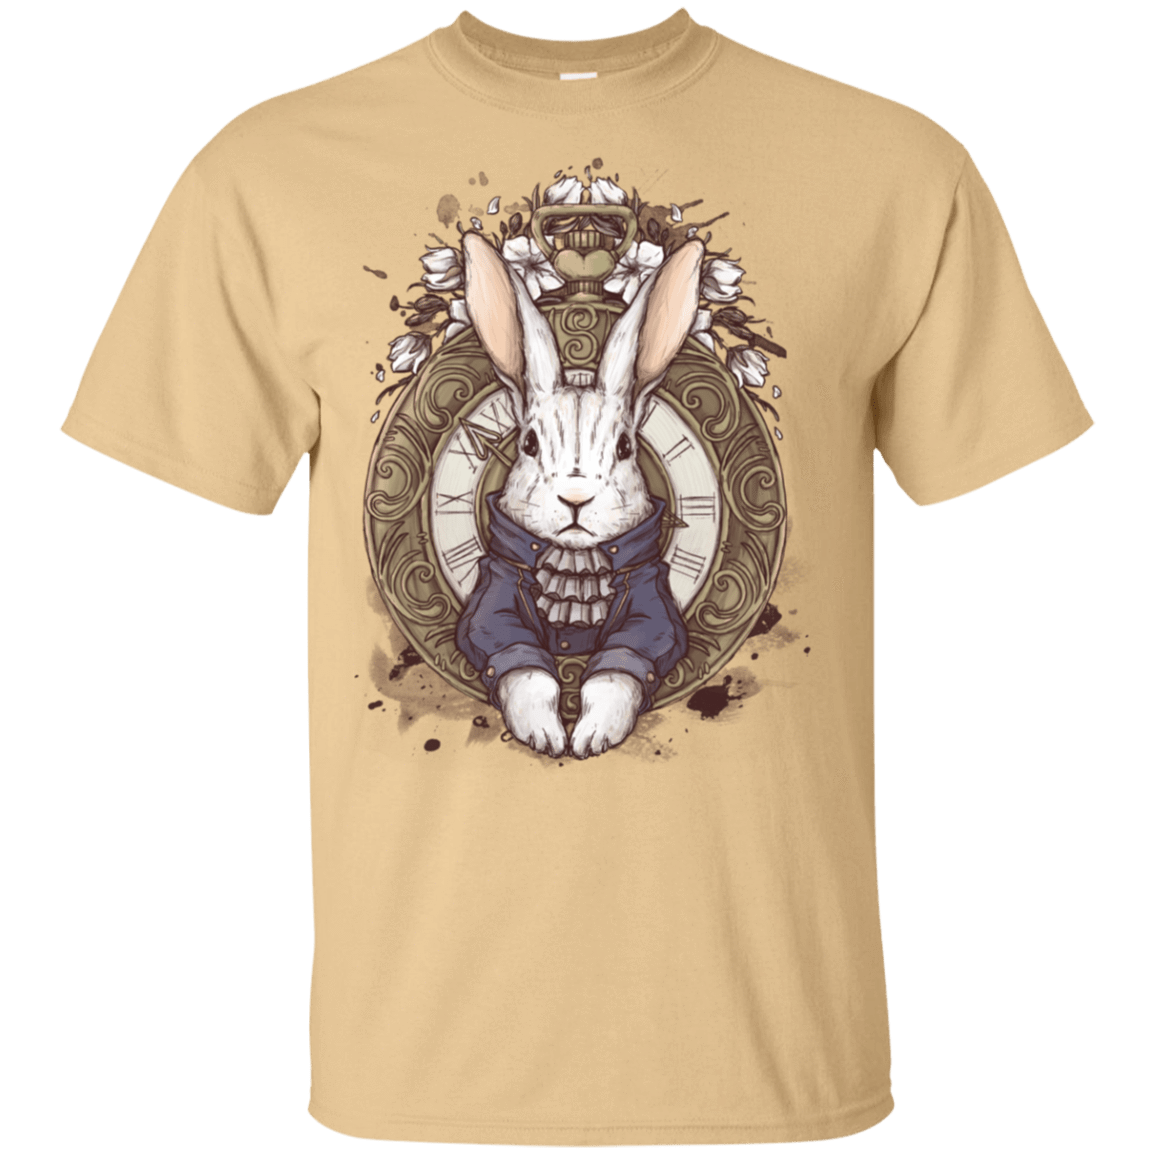 T-Shirts Vegas Gold / S The White Rabbit T-Shirt